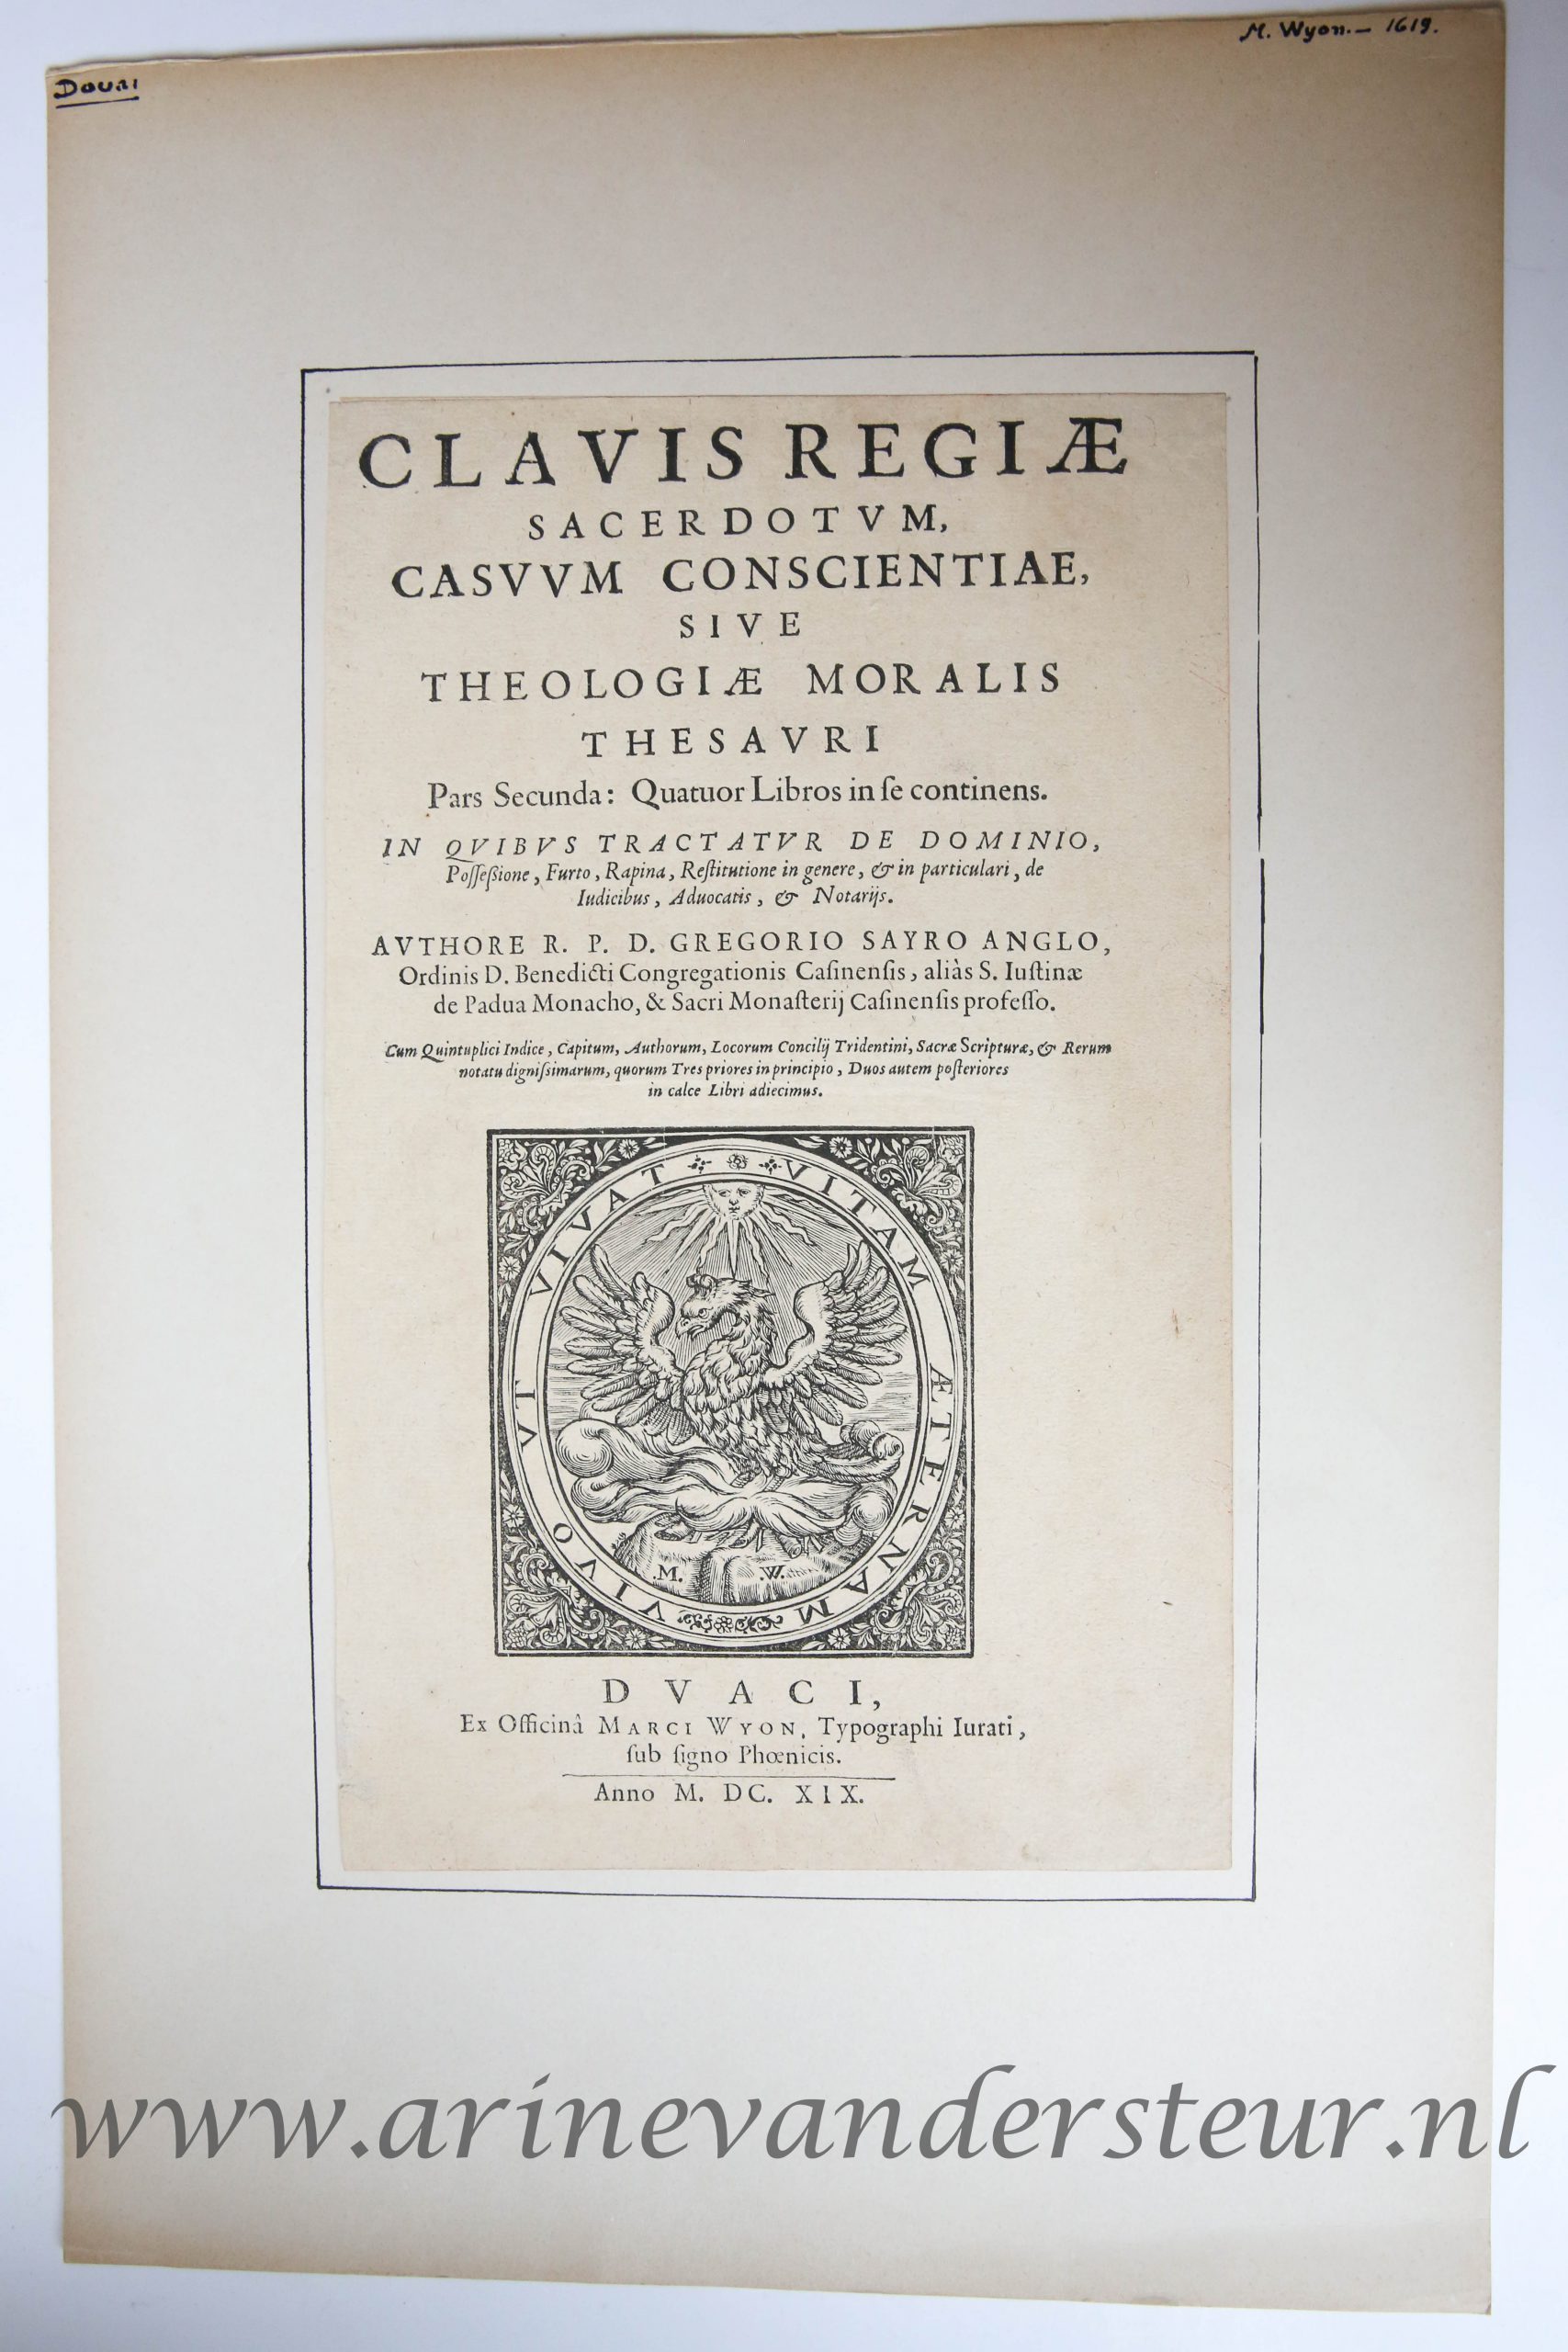 [Antique title page, 1619] Clauis regiae sacerdotum, casuum conscientiae, siue theologiae moralis thesauri pars secunda, published 1619, 1 p.